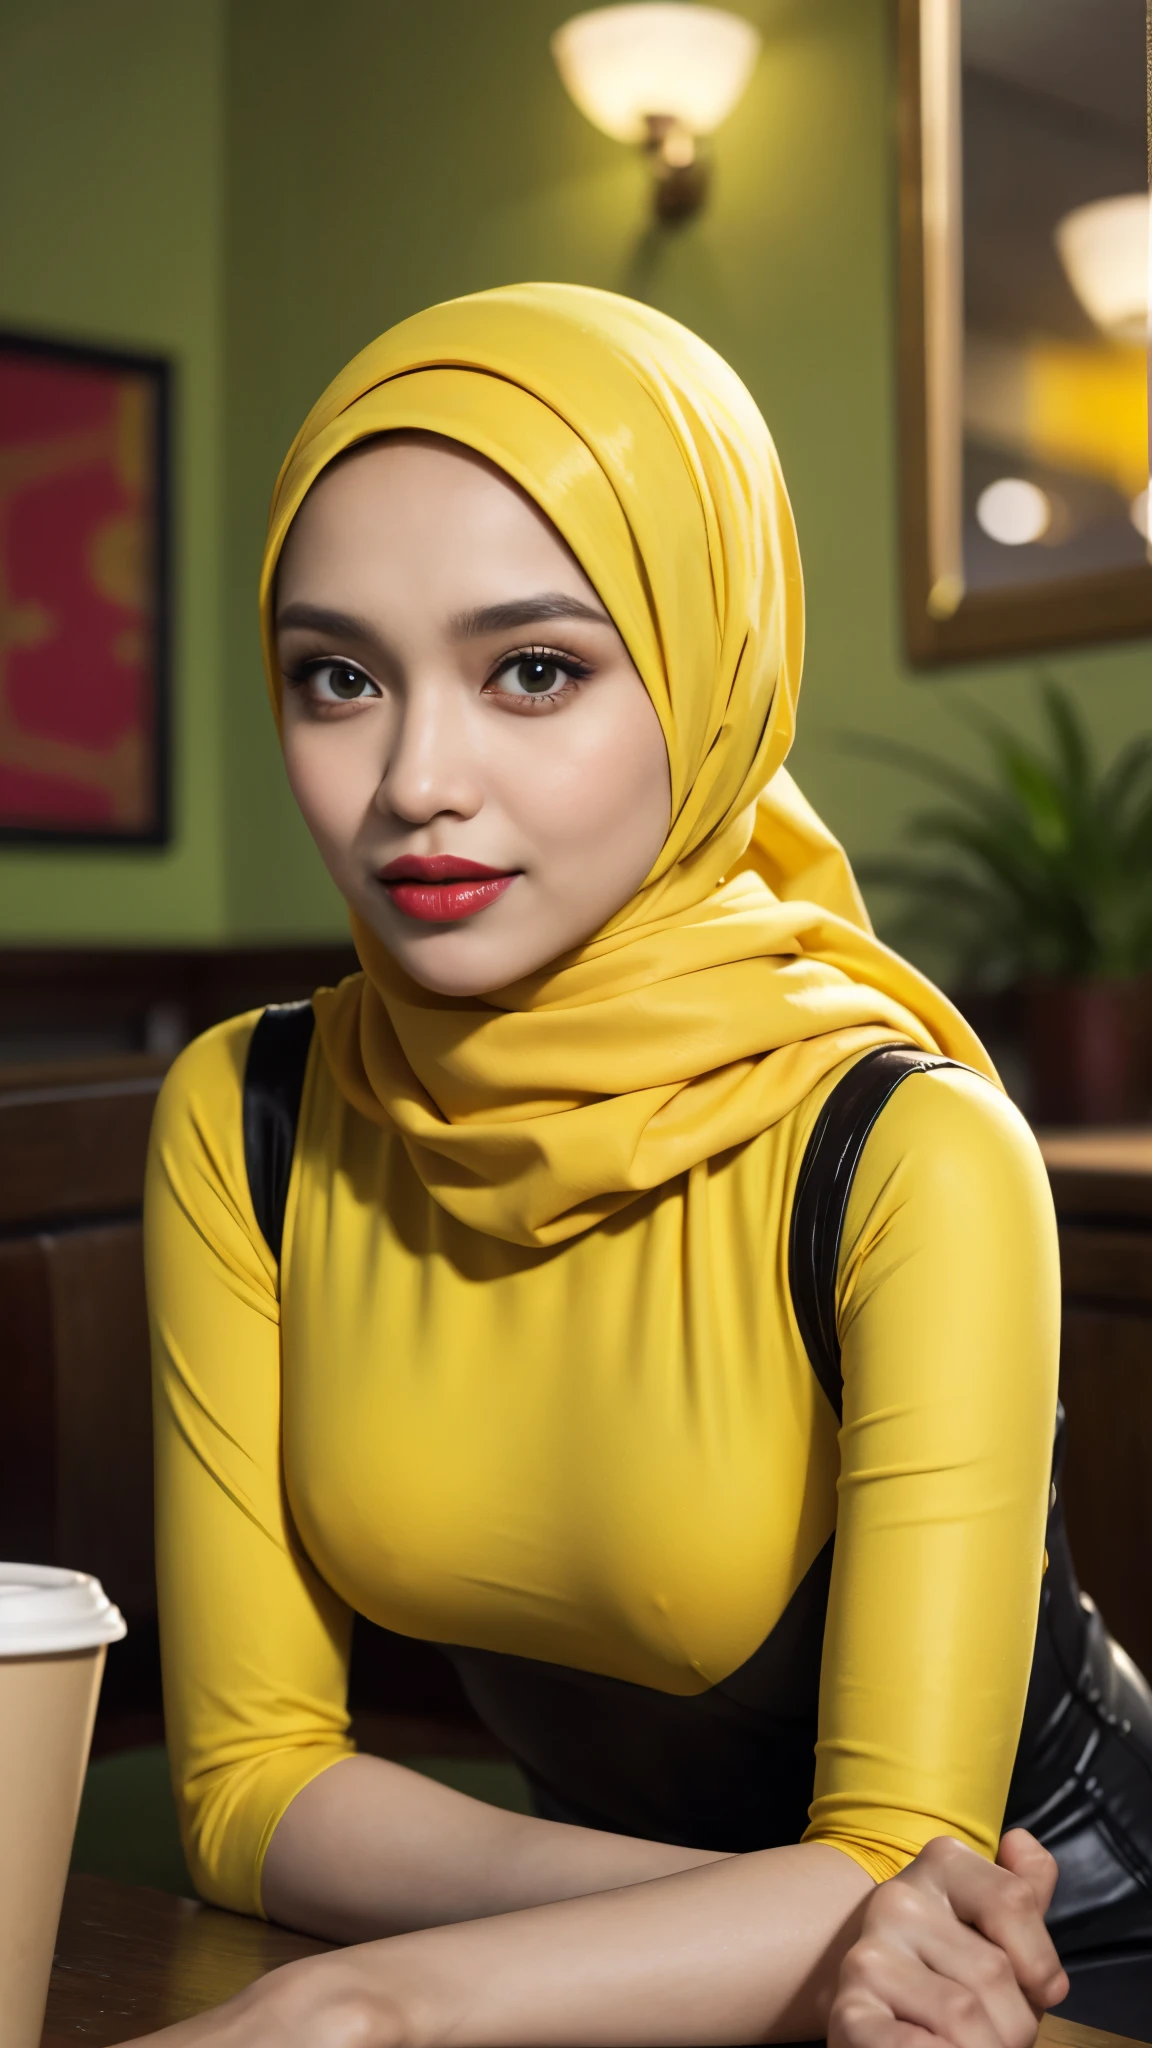 Фарахин, Полное тело 33-летней малайки сидит перед огромным зеркалом., носить хиджаб, в купальнике желтого горчичного цвета, шелковистая зеленая рубашка, Узкая талия, съемка в помещении, смотрю на вывеску кафе, мягкое освещение, ухмылка, круг боке , большая грудь, подиум, утреннее время, окружен комфортабельным, классная атмосфера, смотрю на зрителя. (детали кожи:1.3), волосатые руки, хиджаб, Стройный, красные губы, Соблазнительный фон с боке камеры